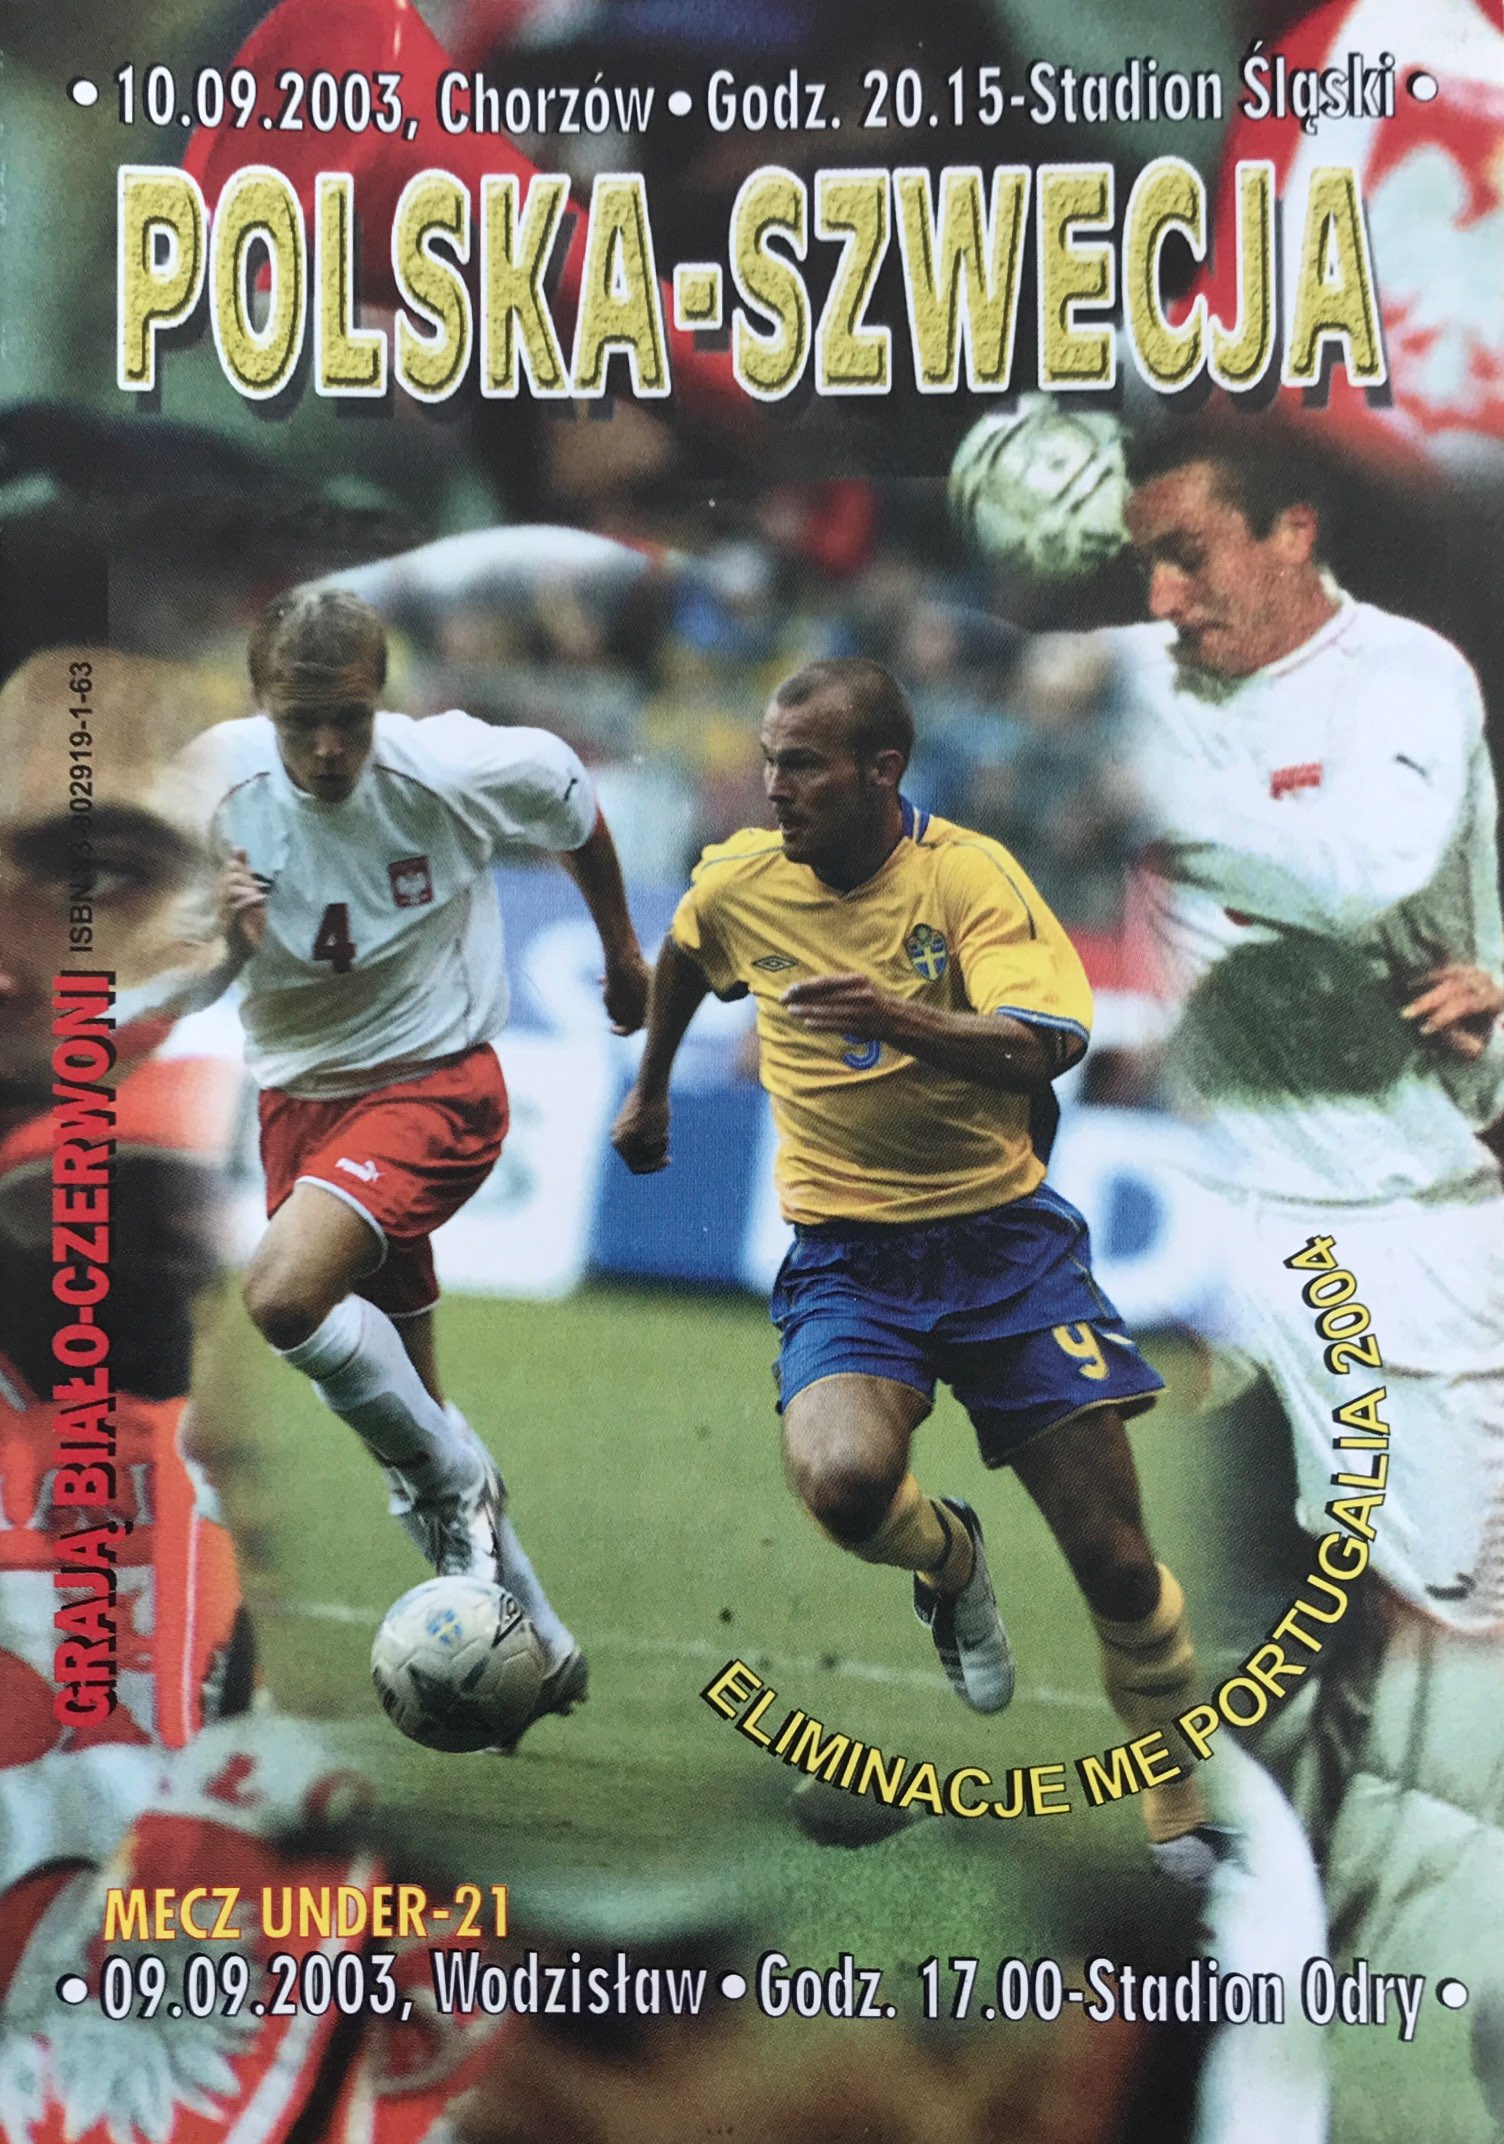 Program meczowy Polska - Szwecja 0:2 (10.09.2003).